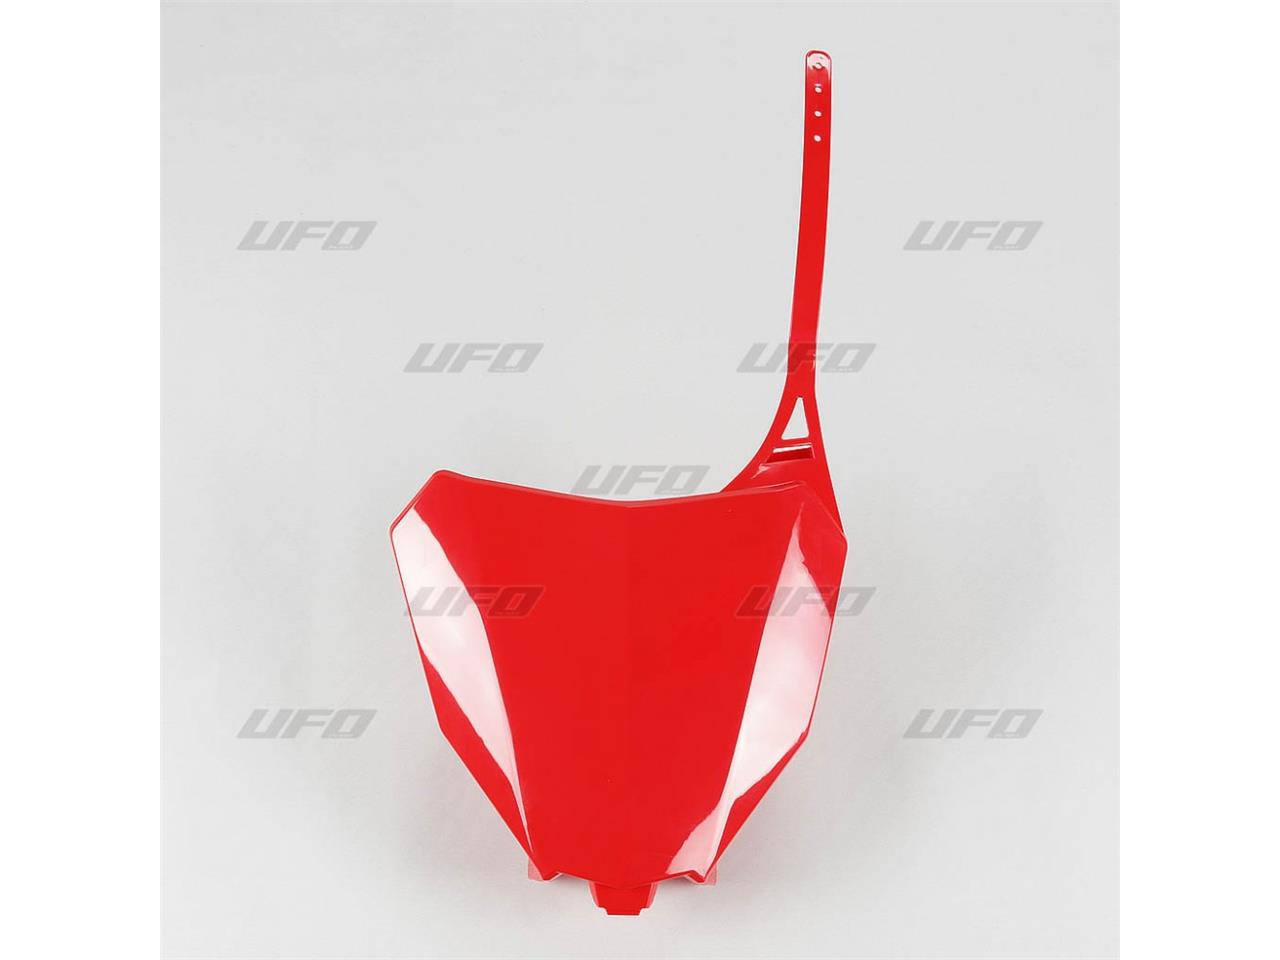 Plaque numéro frontale marque UFO rouge Honda CRF450R/RX